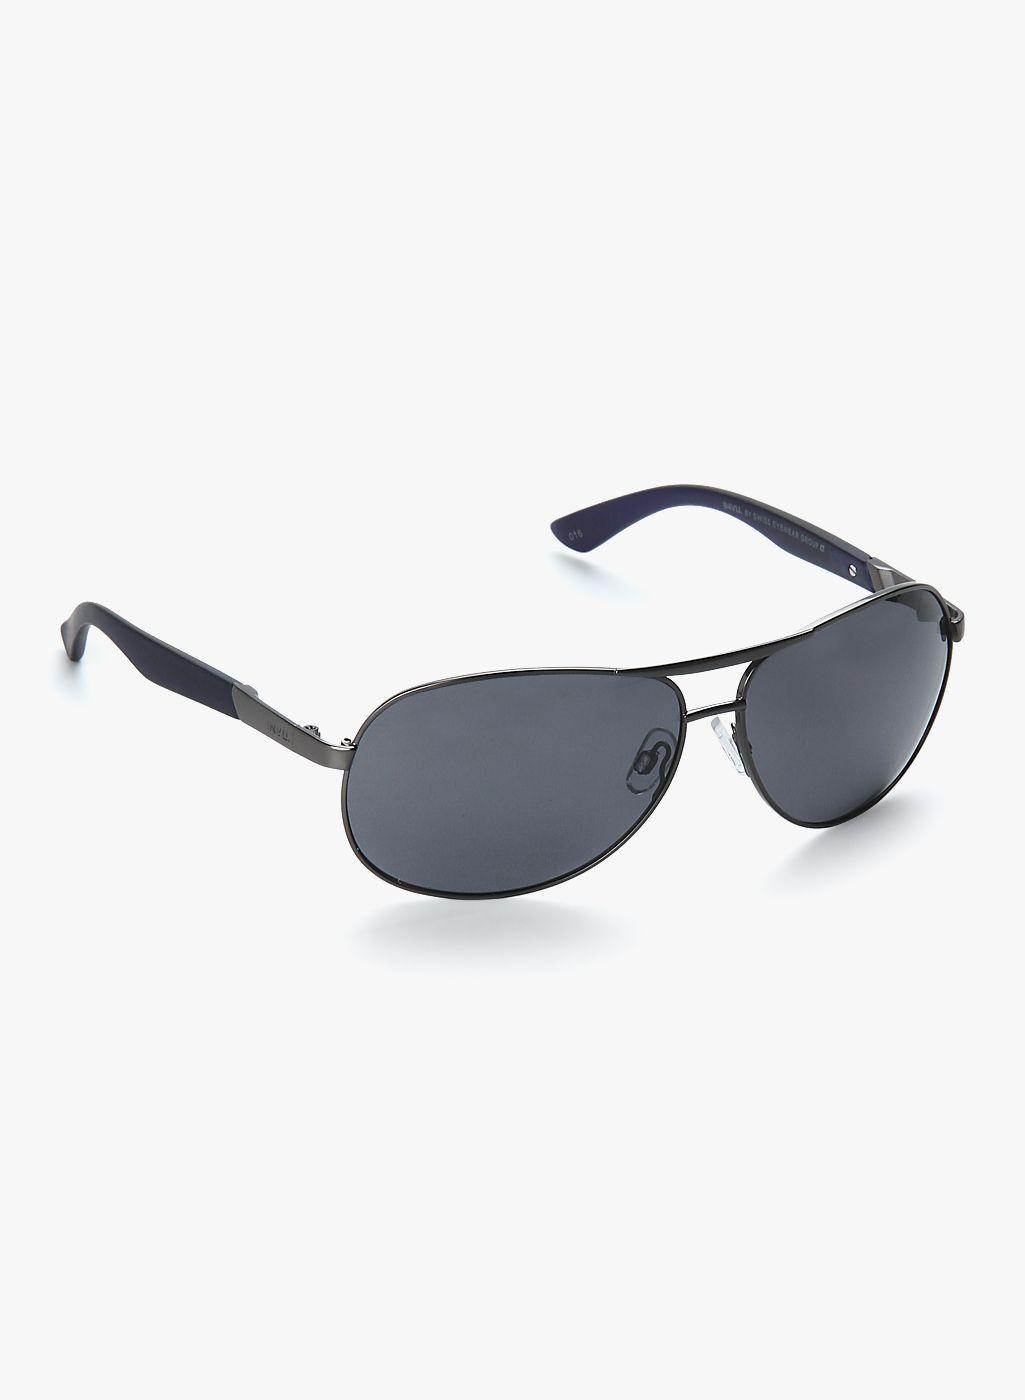 invu men aviator sunglasses b1606c